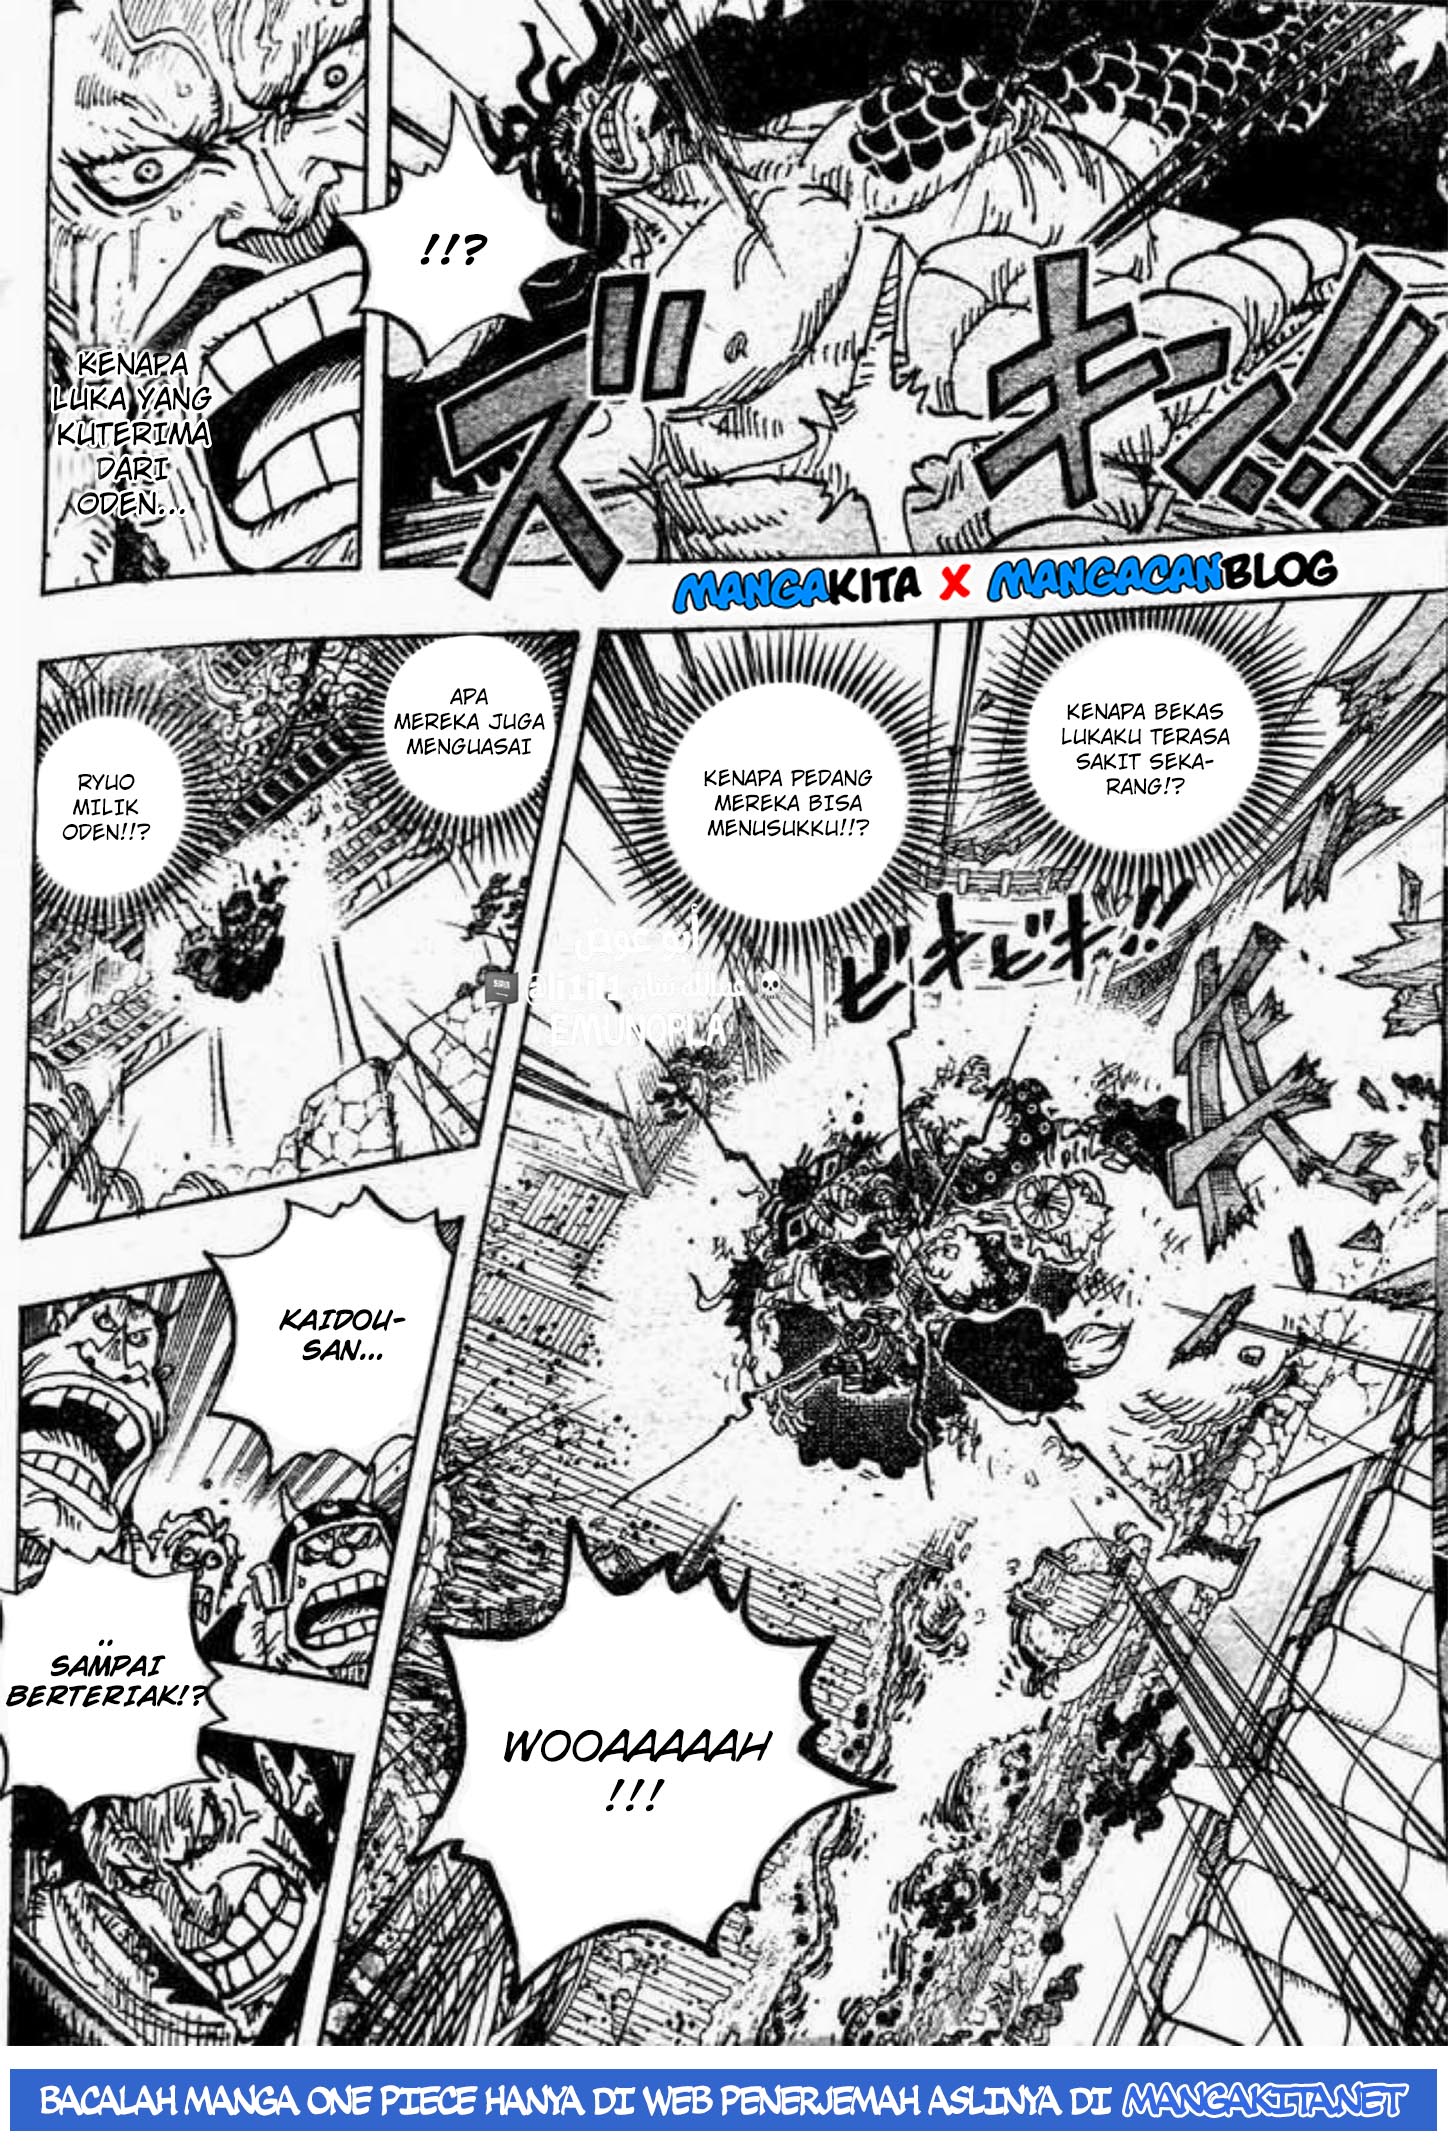 One Piece Chapter 987 Mangakyo